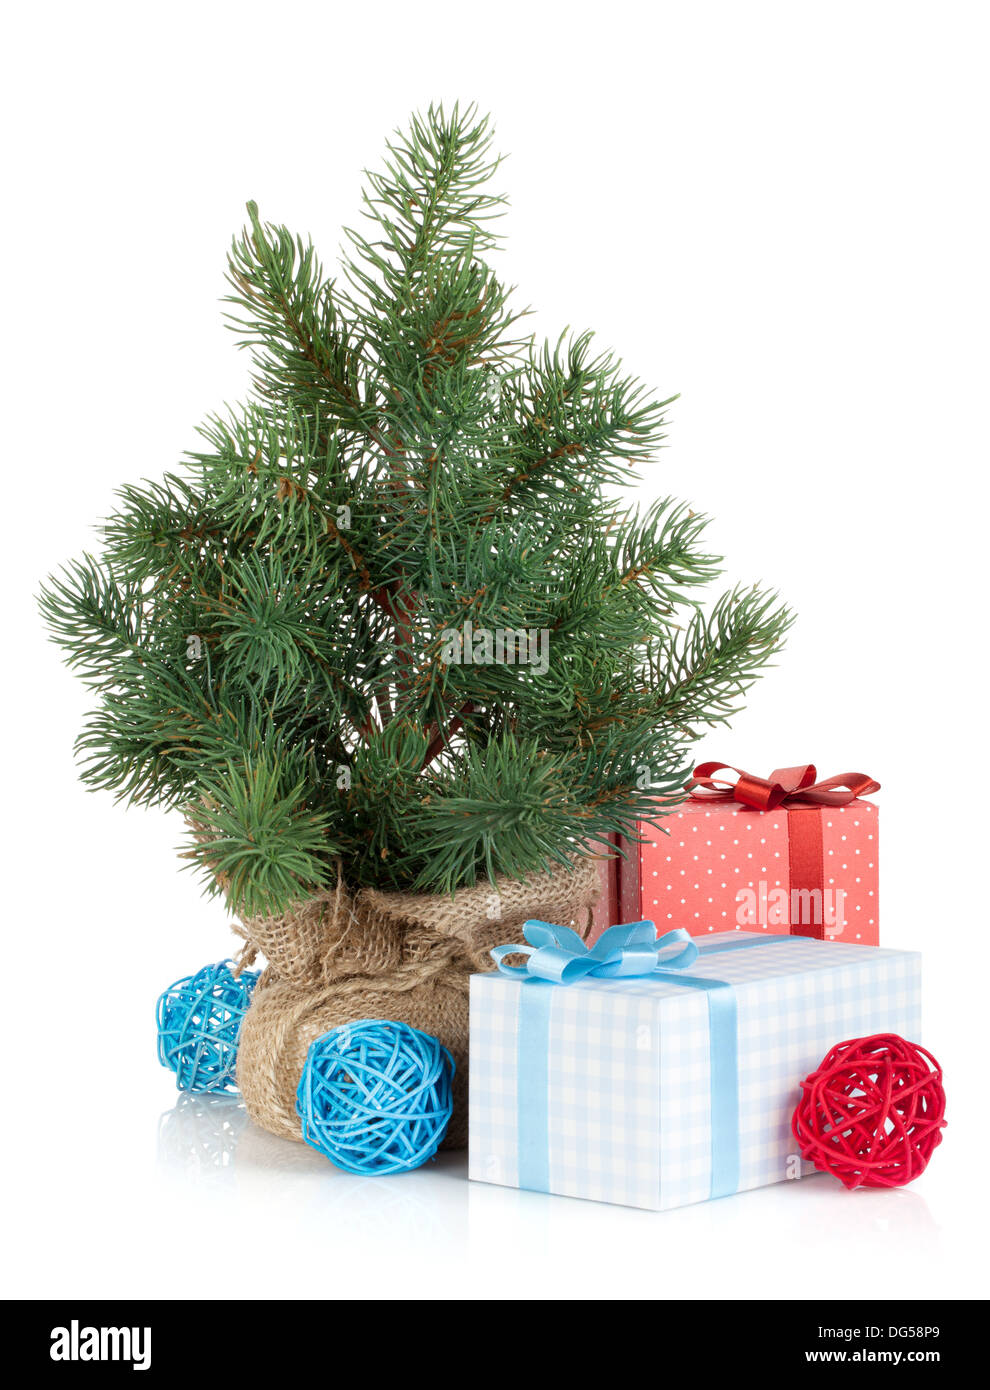 Fake mini albero di Natale con la decorazione e la confezione regalo. Isolato su sfondo bianco Foto Stock